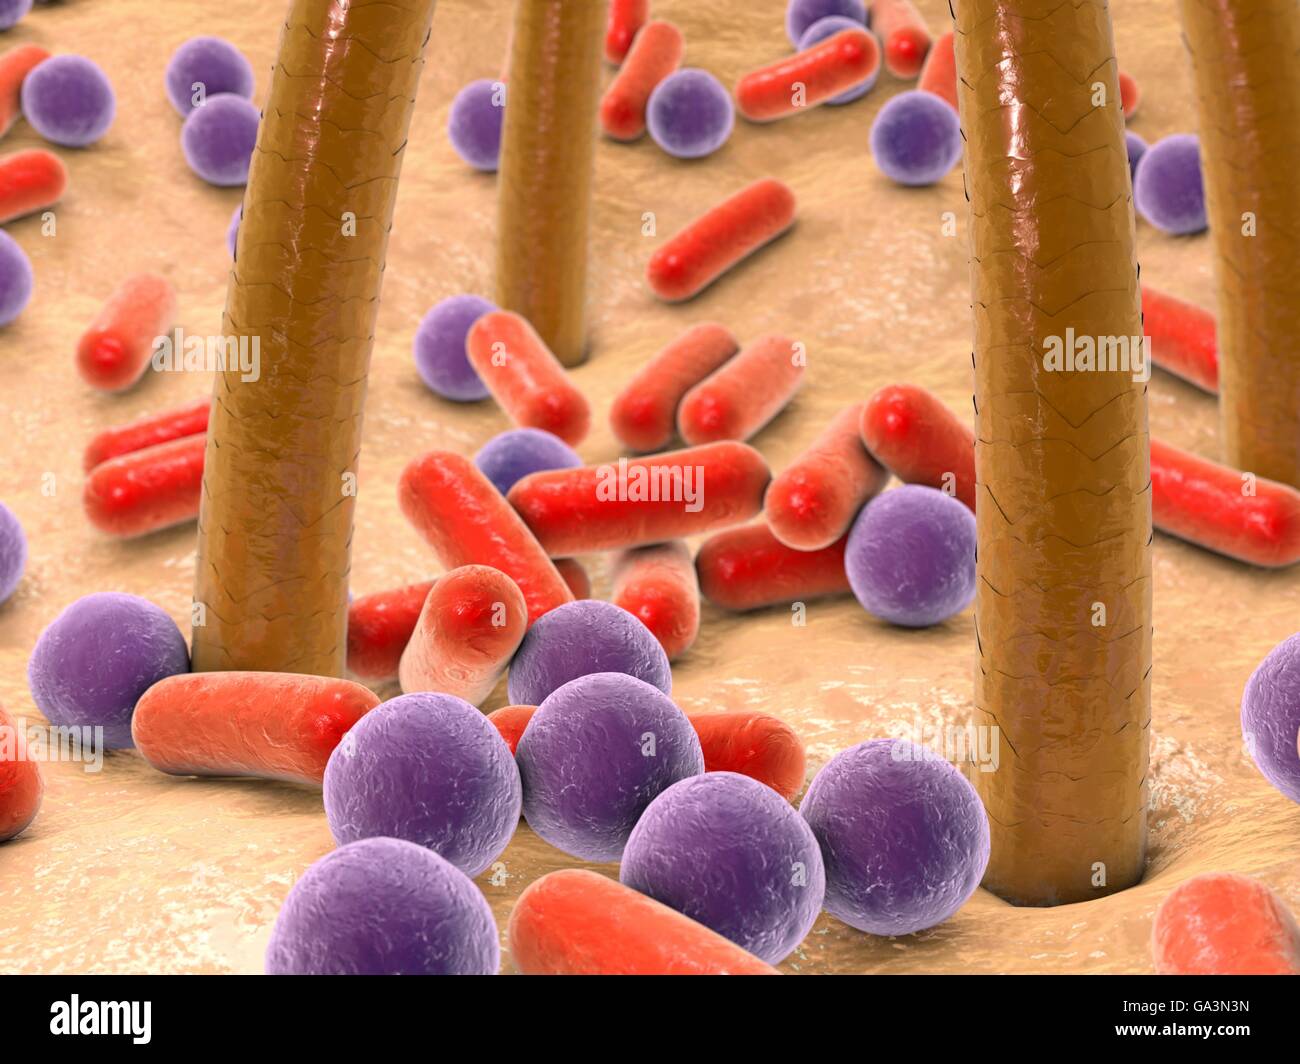 Batteri sulla pelle con peli. Computer artwork di batteri (viola e rosso)  sulla pelle umana. Molti tipi di batteri si trovano sulla pelle umana,  specialmente associato con le ghiandole sudoripare e i